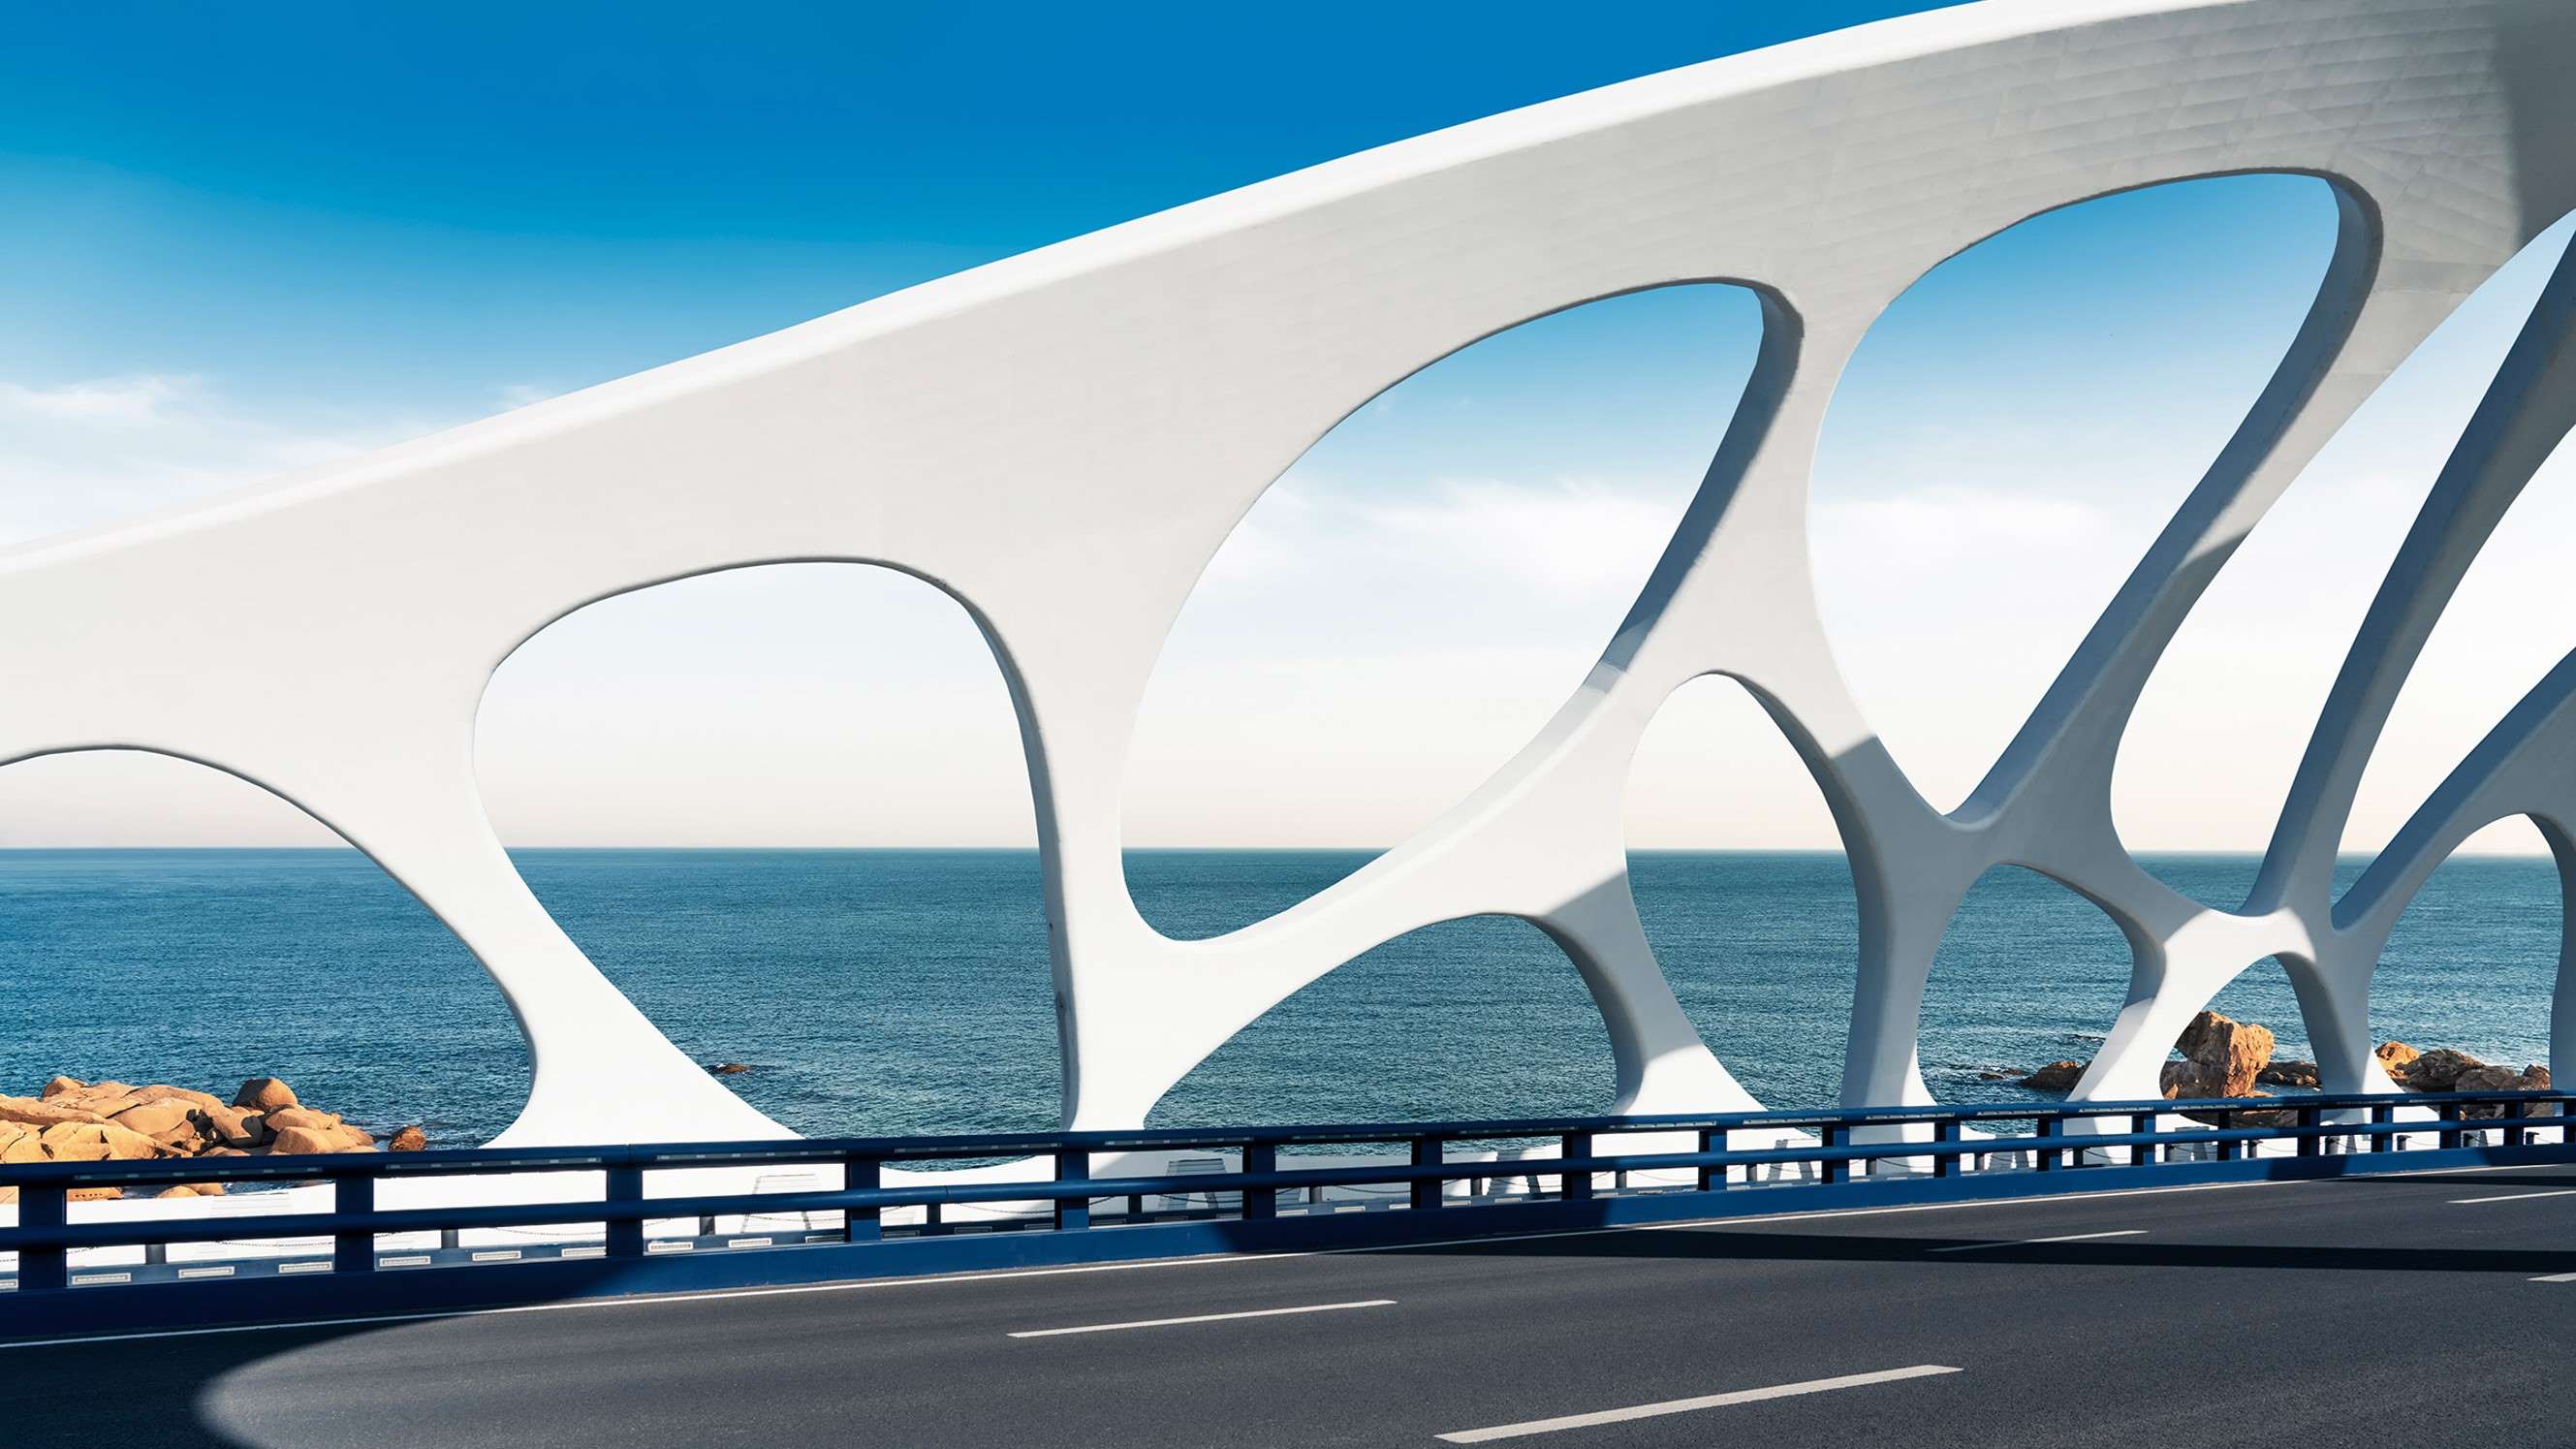 Moderne brug met witte bogen over de zee.